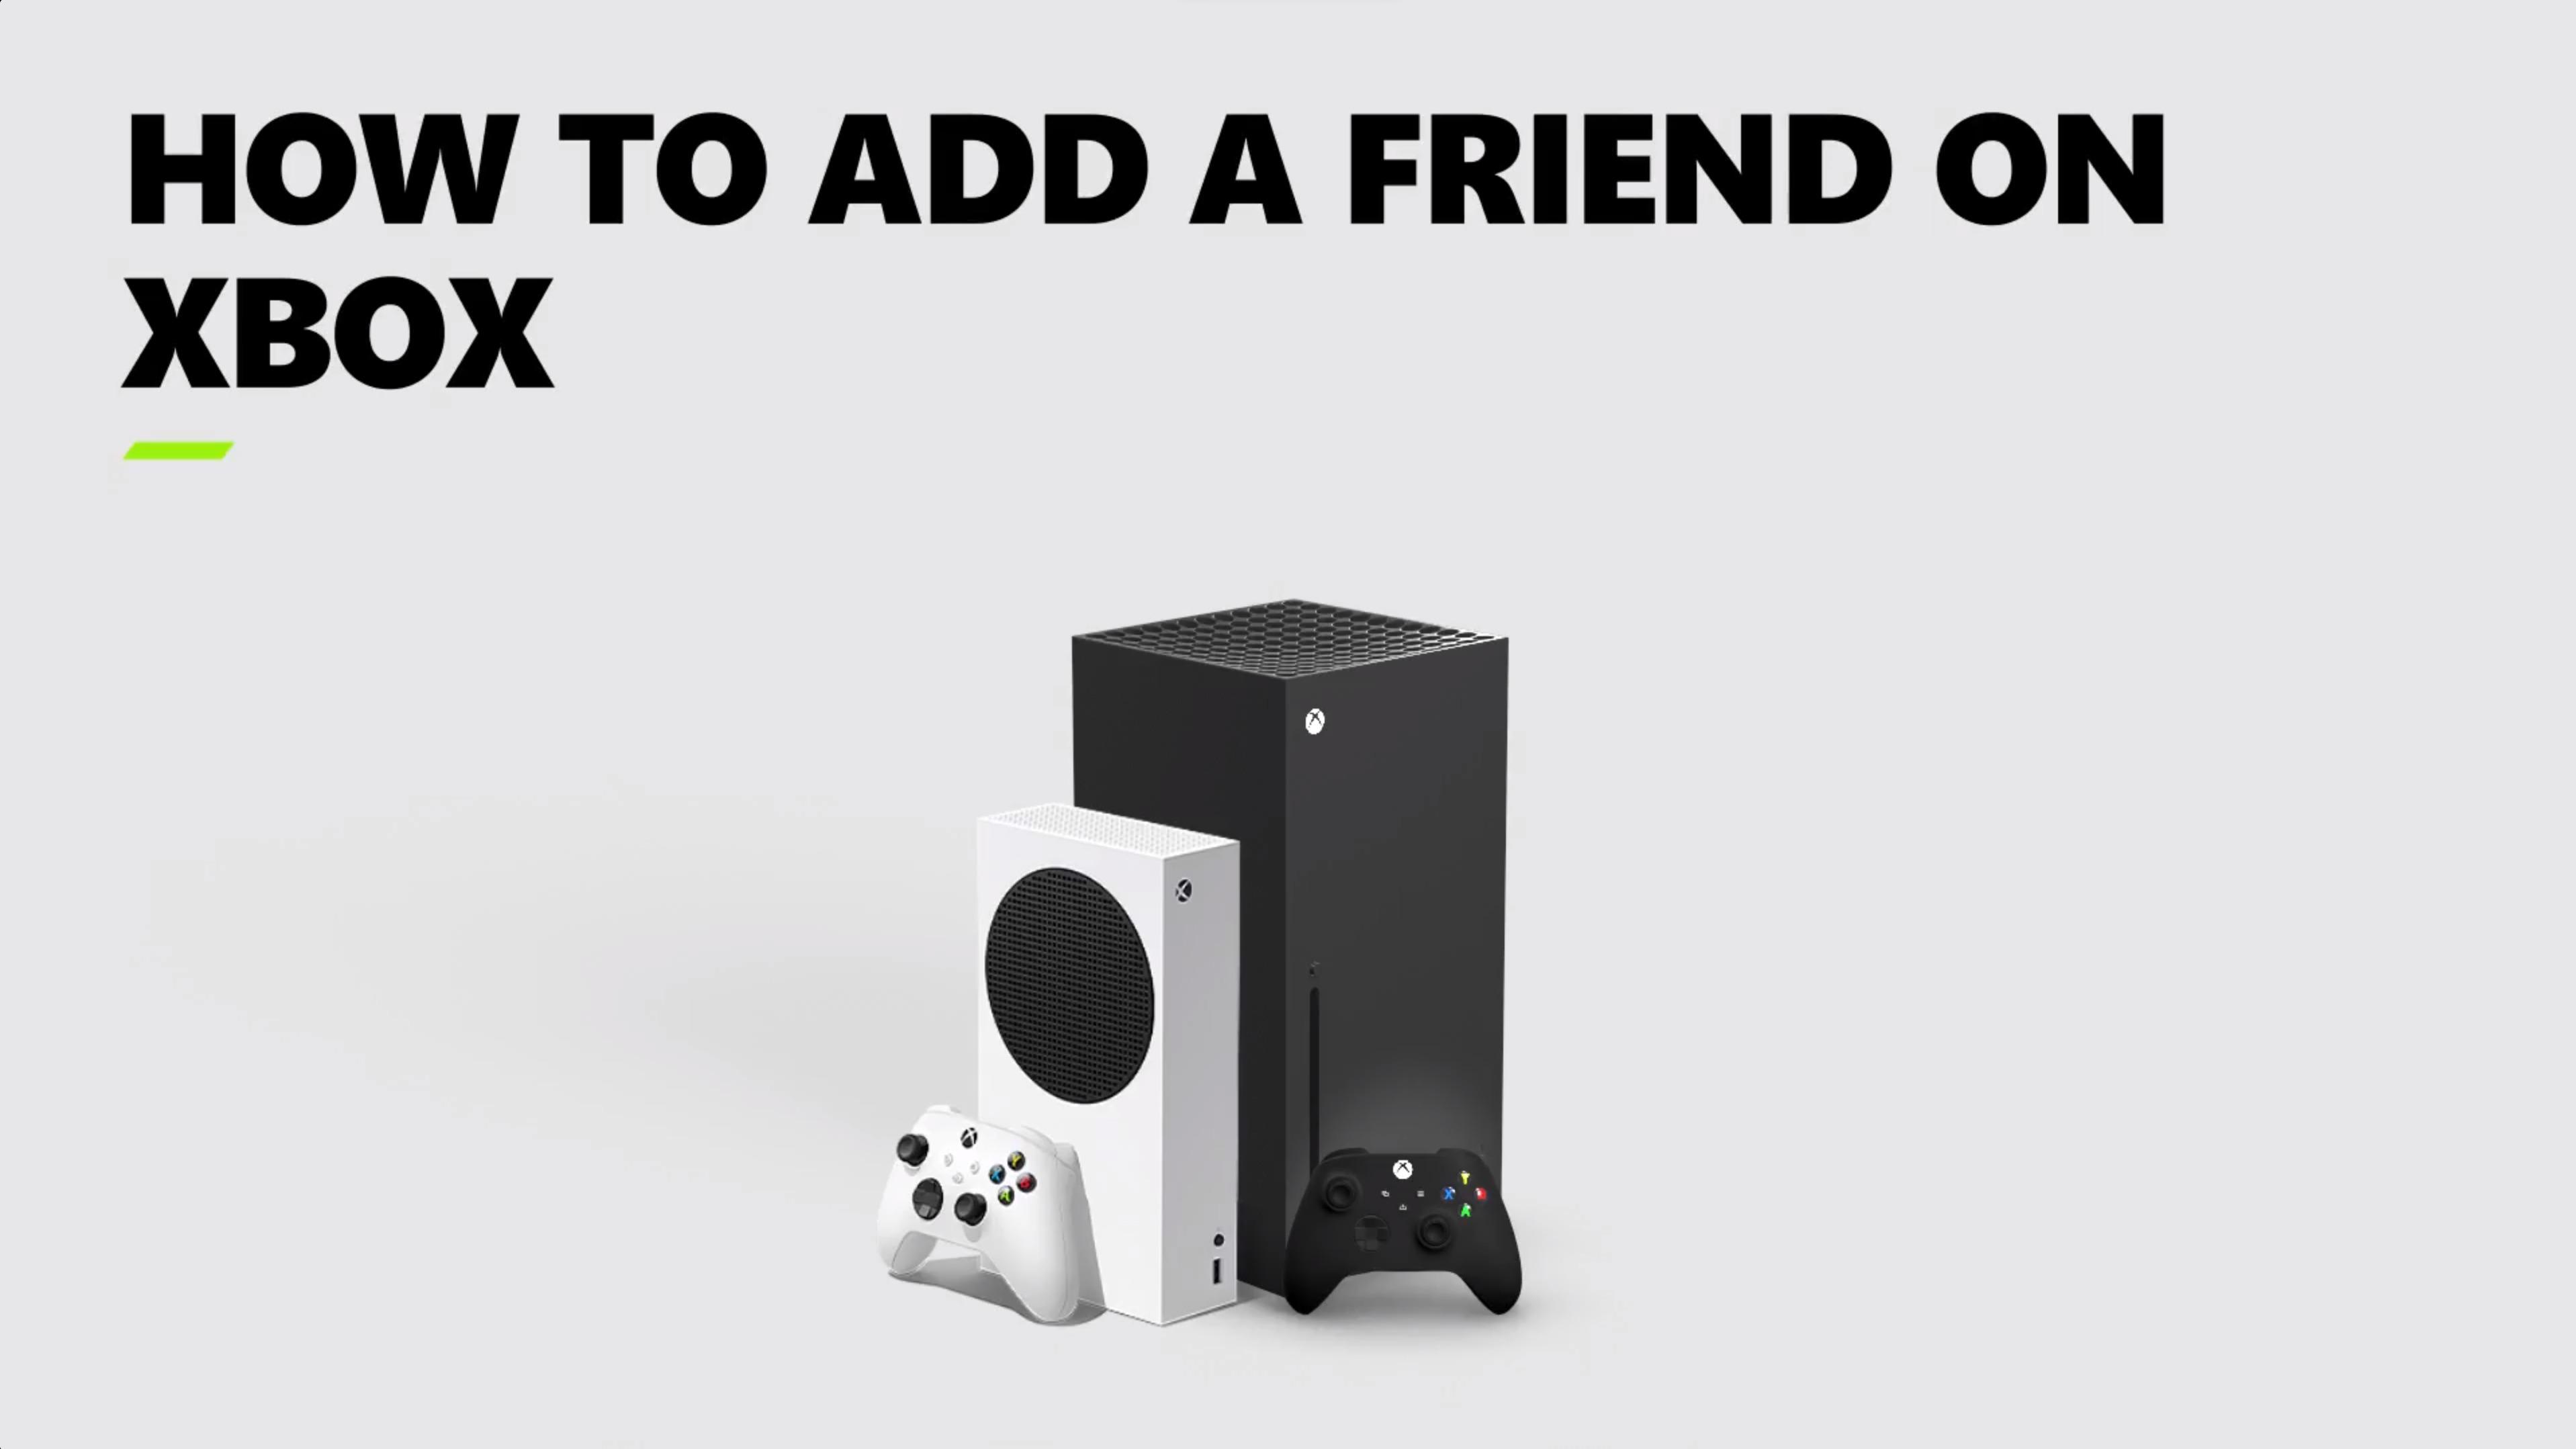 Adding a Friend on Xbox